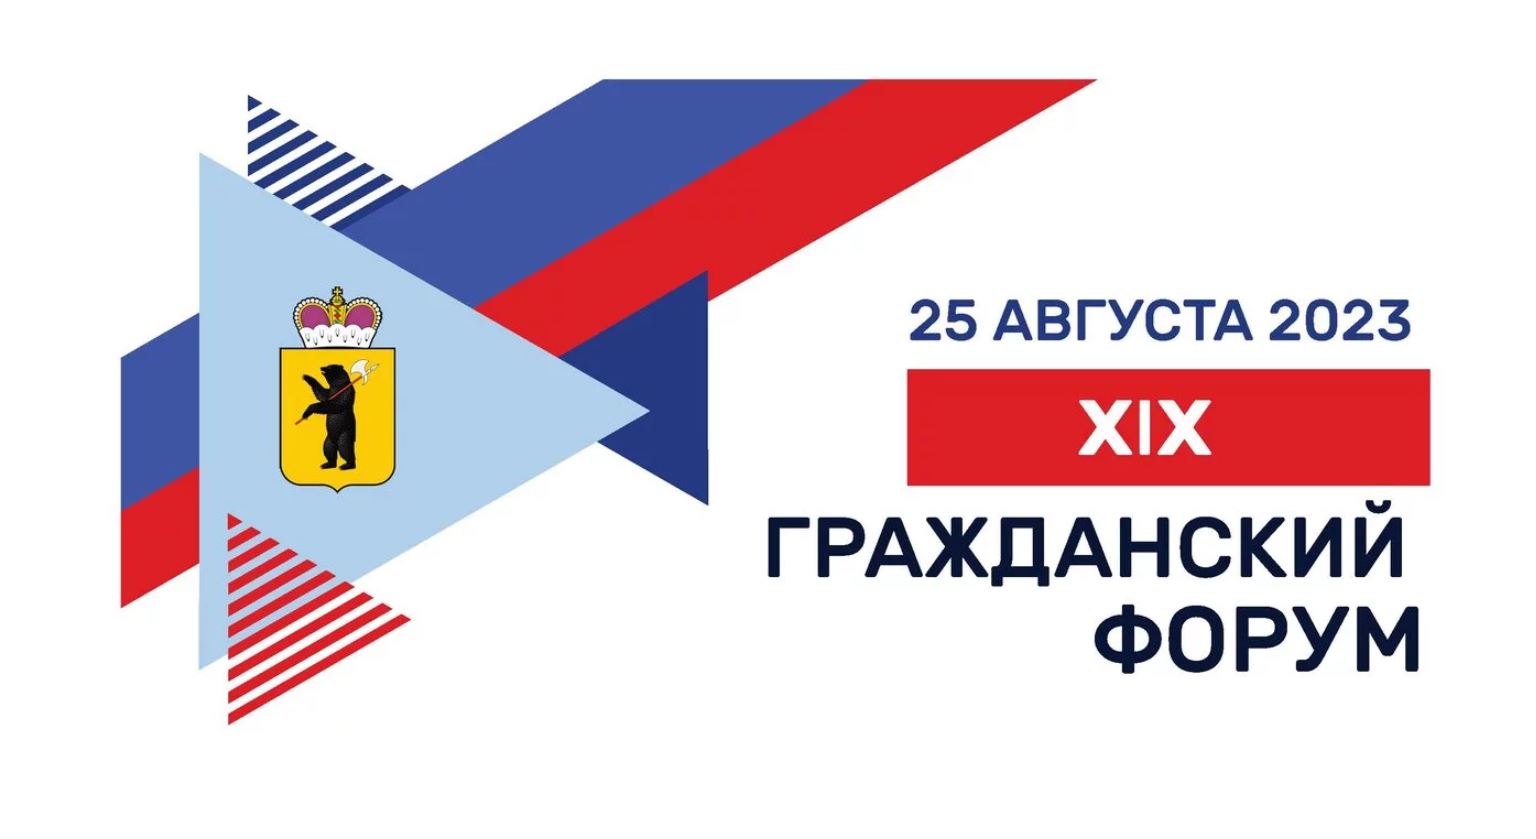 25 августа в Ярославле пройдет 19 гражданский форум